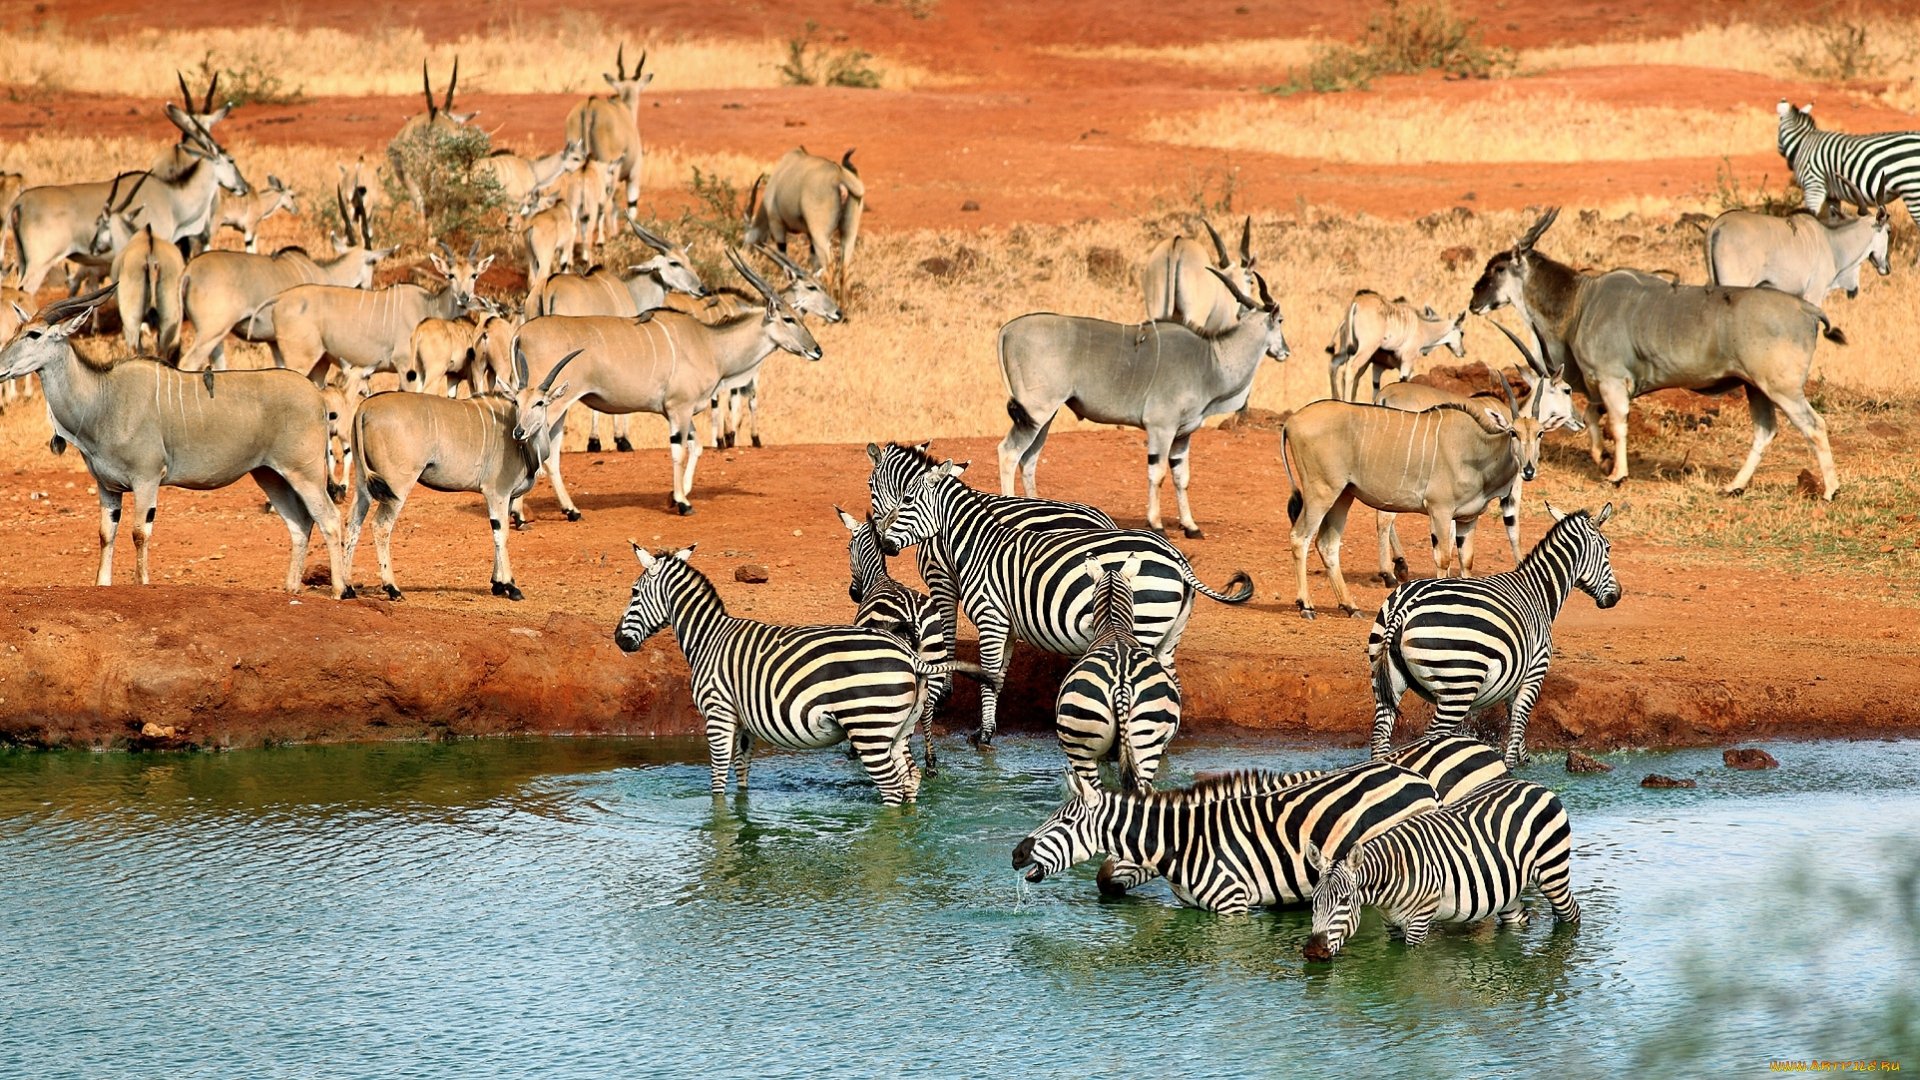 wild, Animal, River, Safari, Zebra Wallpaper